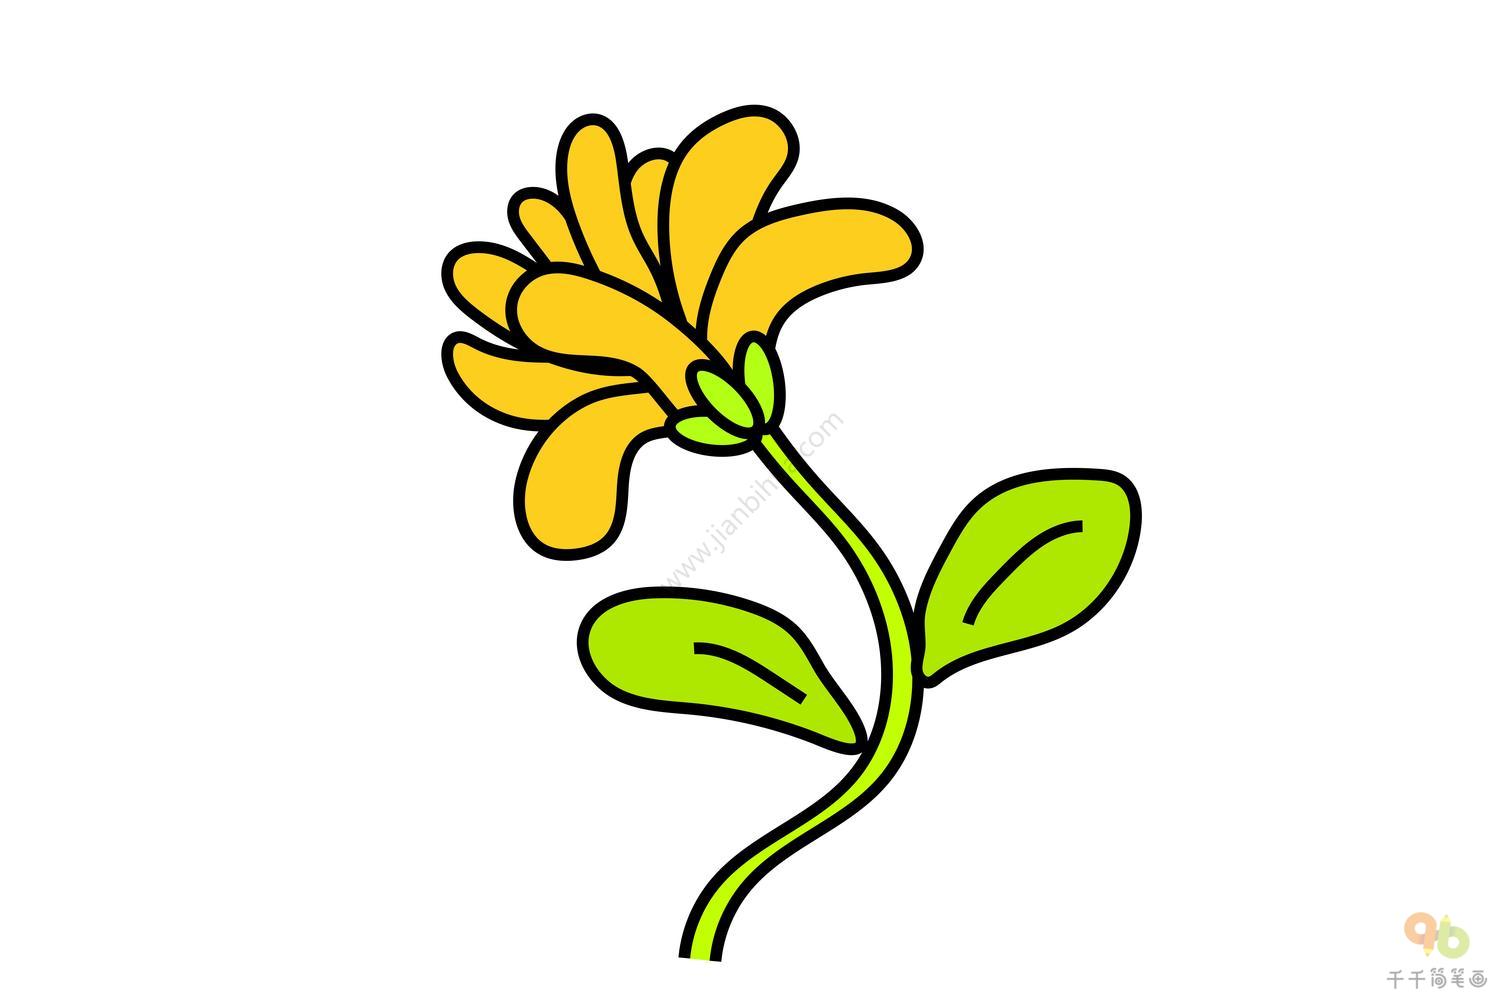 简笔画图片大全 简单漂亮的菊花画法图解 - 有点网 - 好手艺